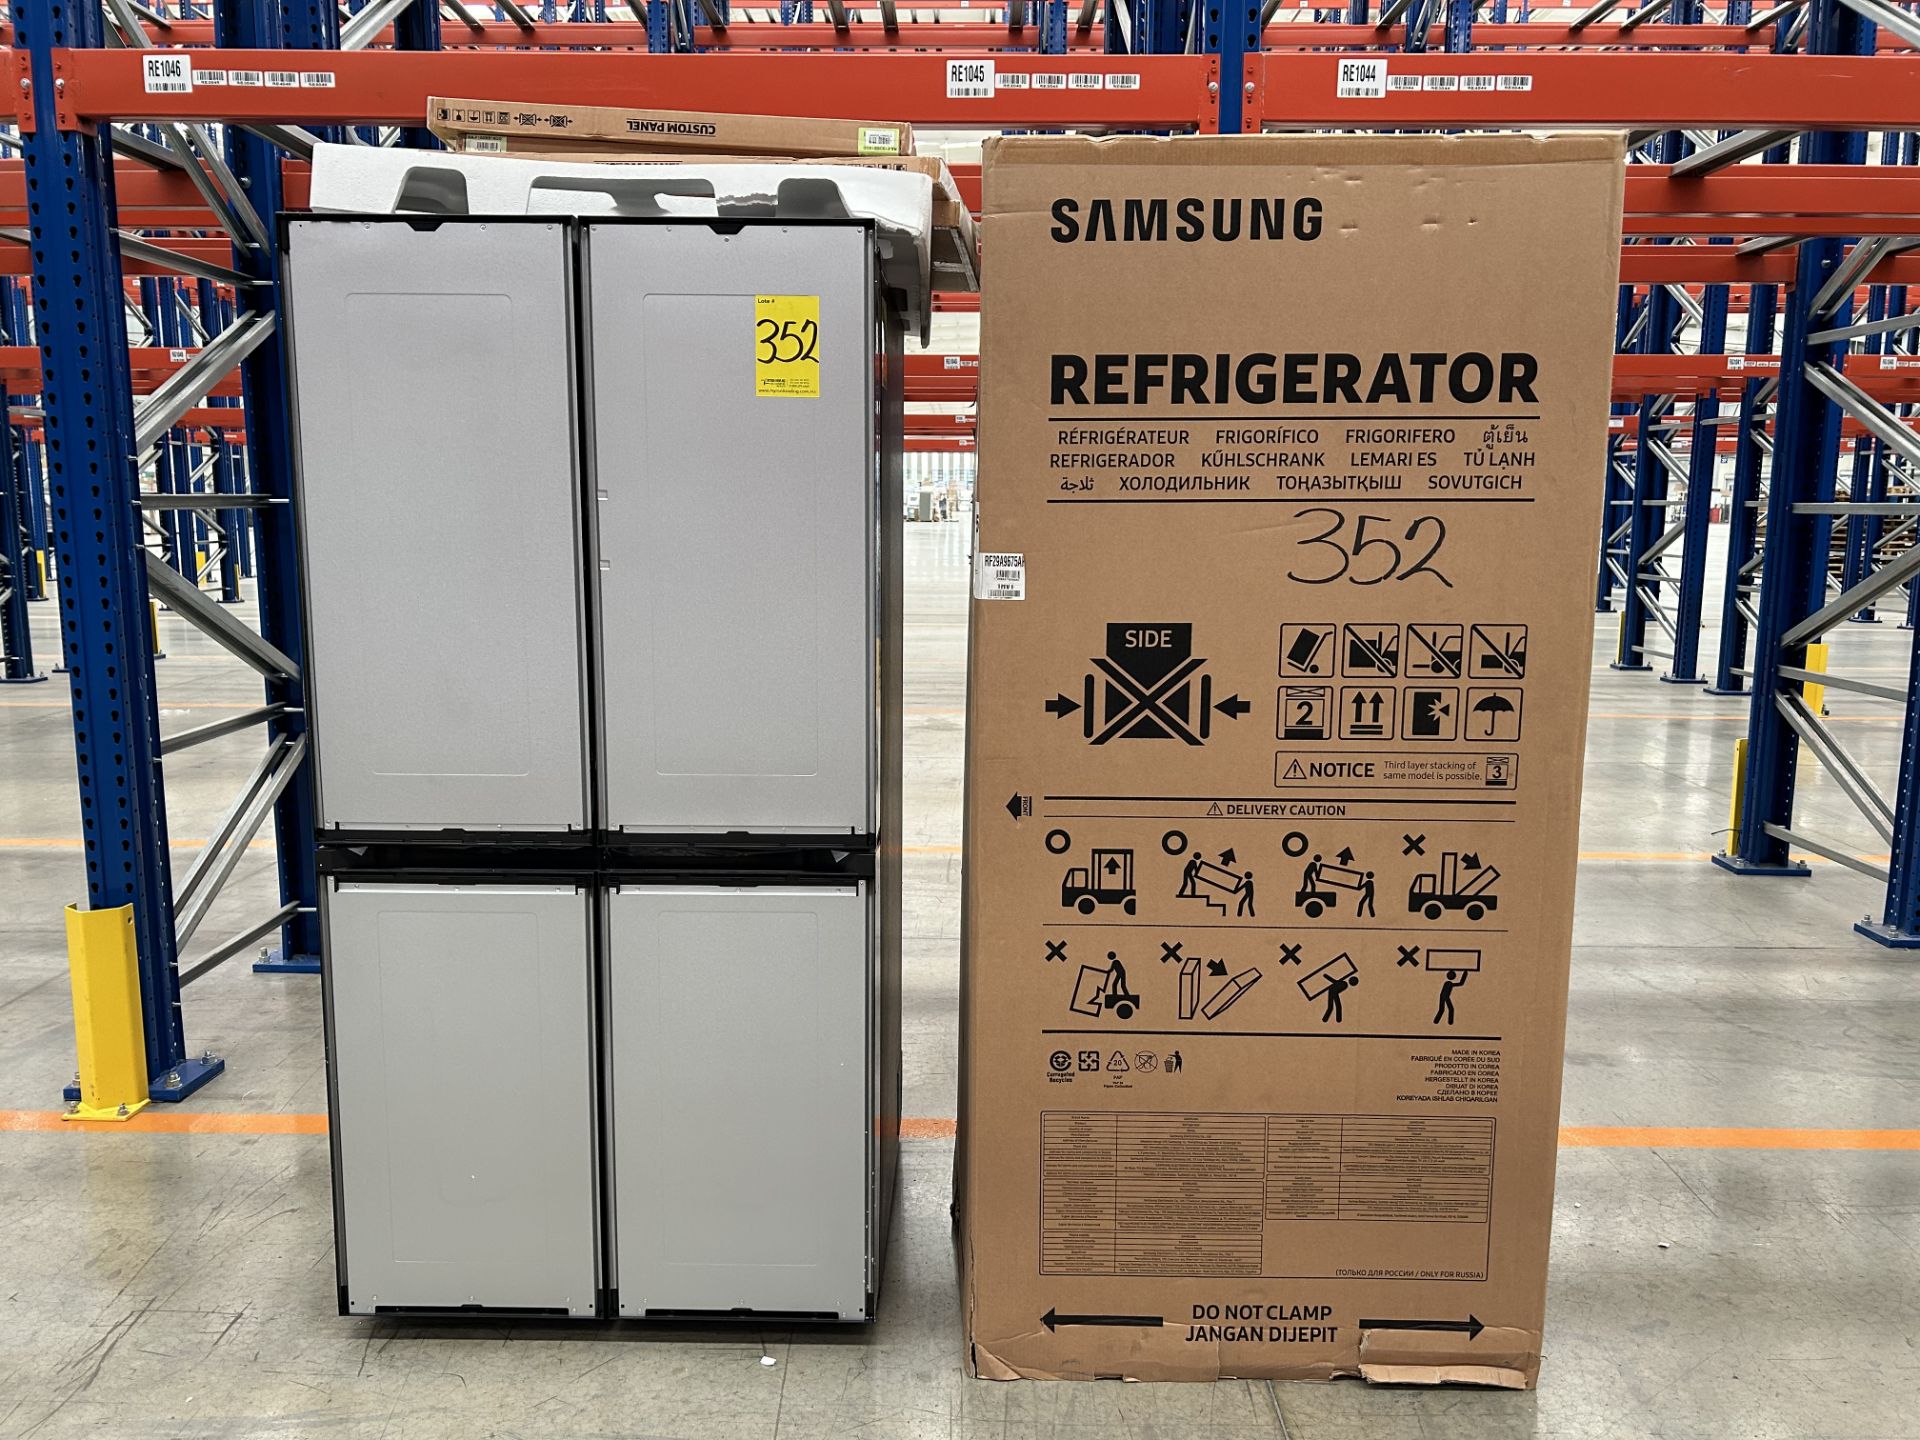 (NUEVO) Lote de 1 Refrigerador Marca SAMSUNG, Modelo RF29A9675AP, Serie 00081P, Color GRIS